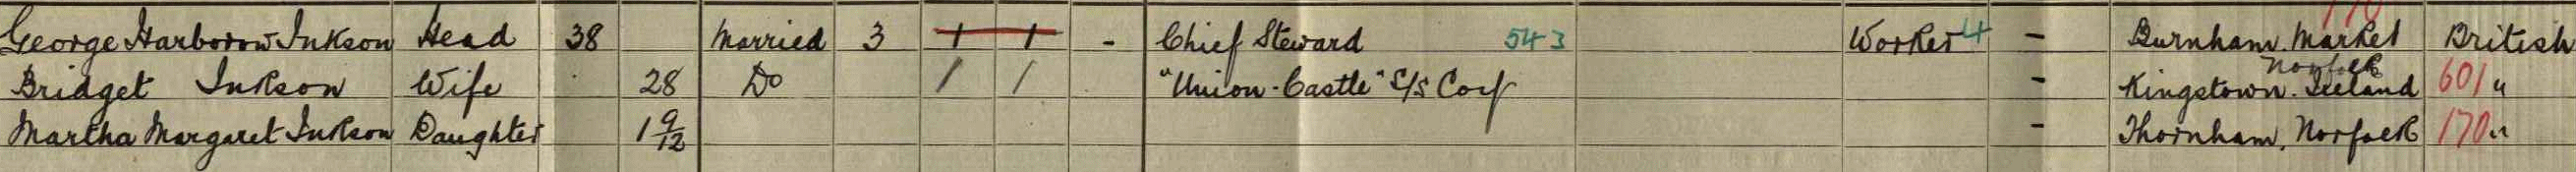 george harborow 1911 census